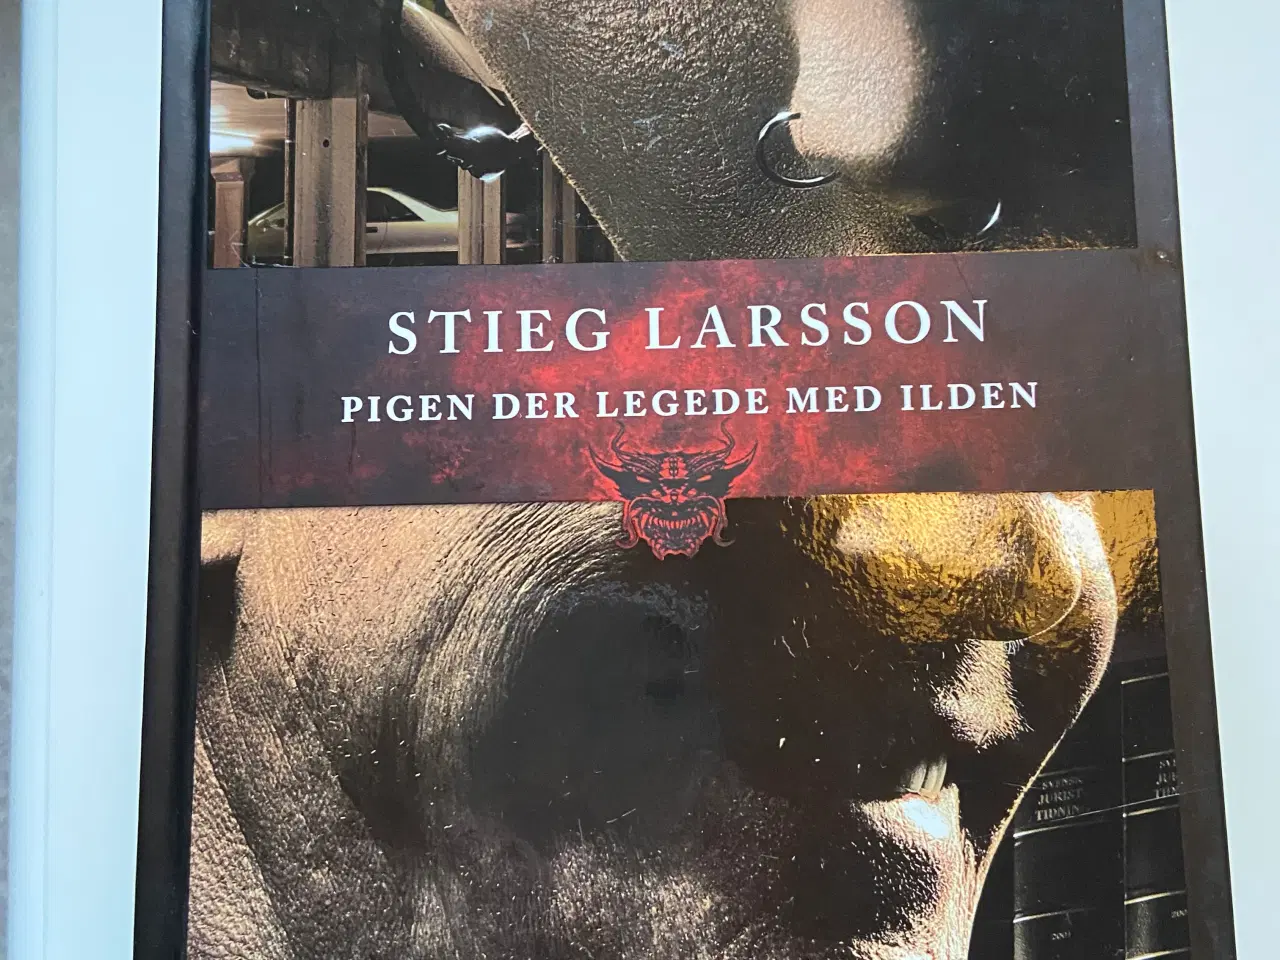 Billede 3 - 3 Stieg Larsson bøger 40,- samlet